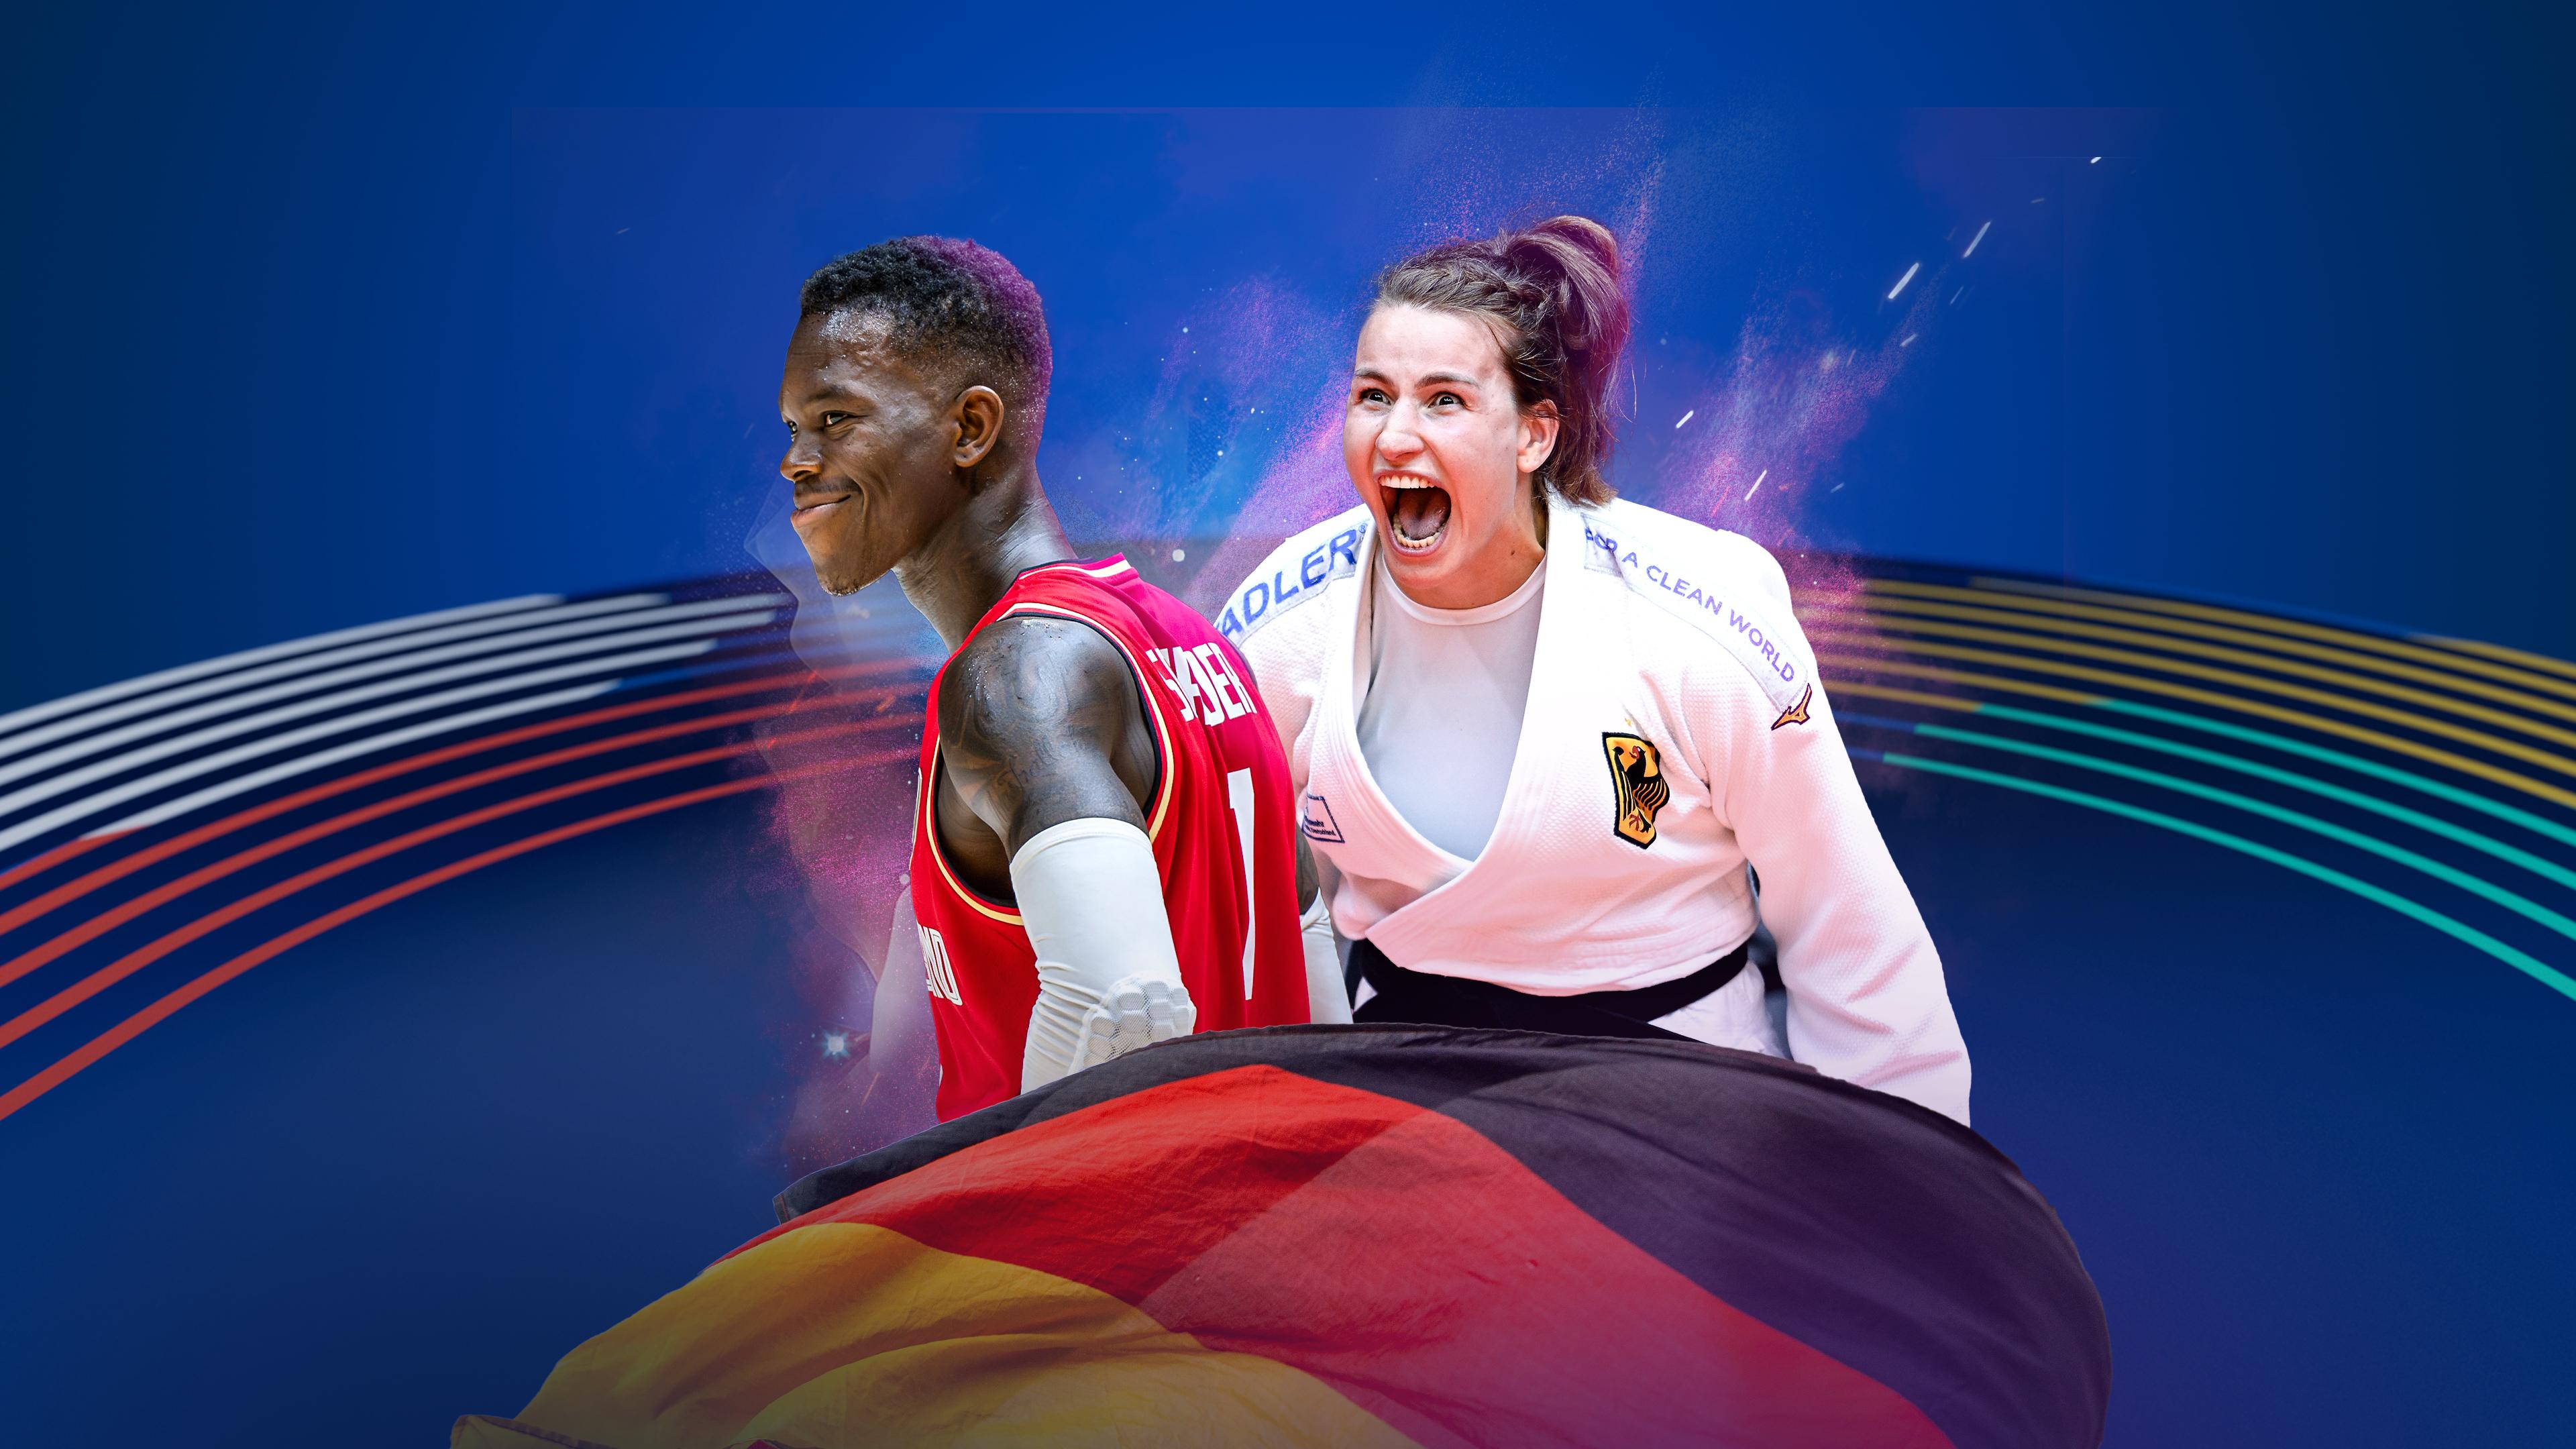 Dennis Schröder et Anna-Maria Wagner porteront les drapeaux allemands lors de la cérémonie d'ouverture des Jeux Olympiques de Paris